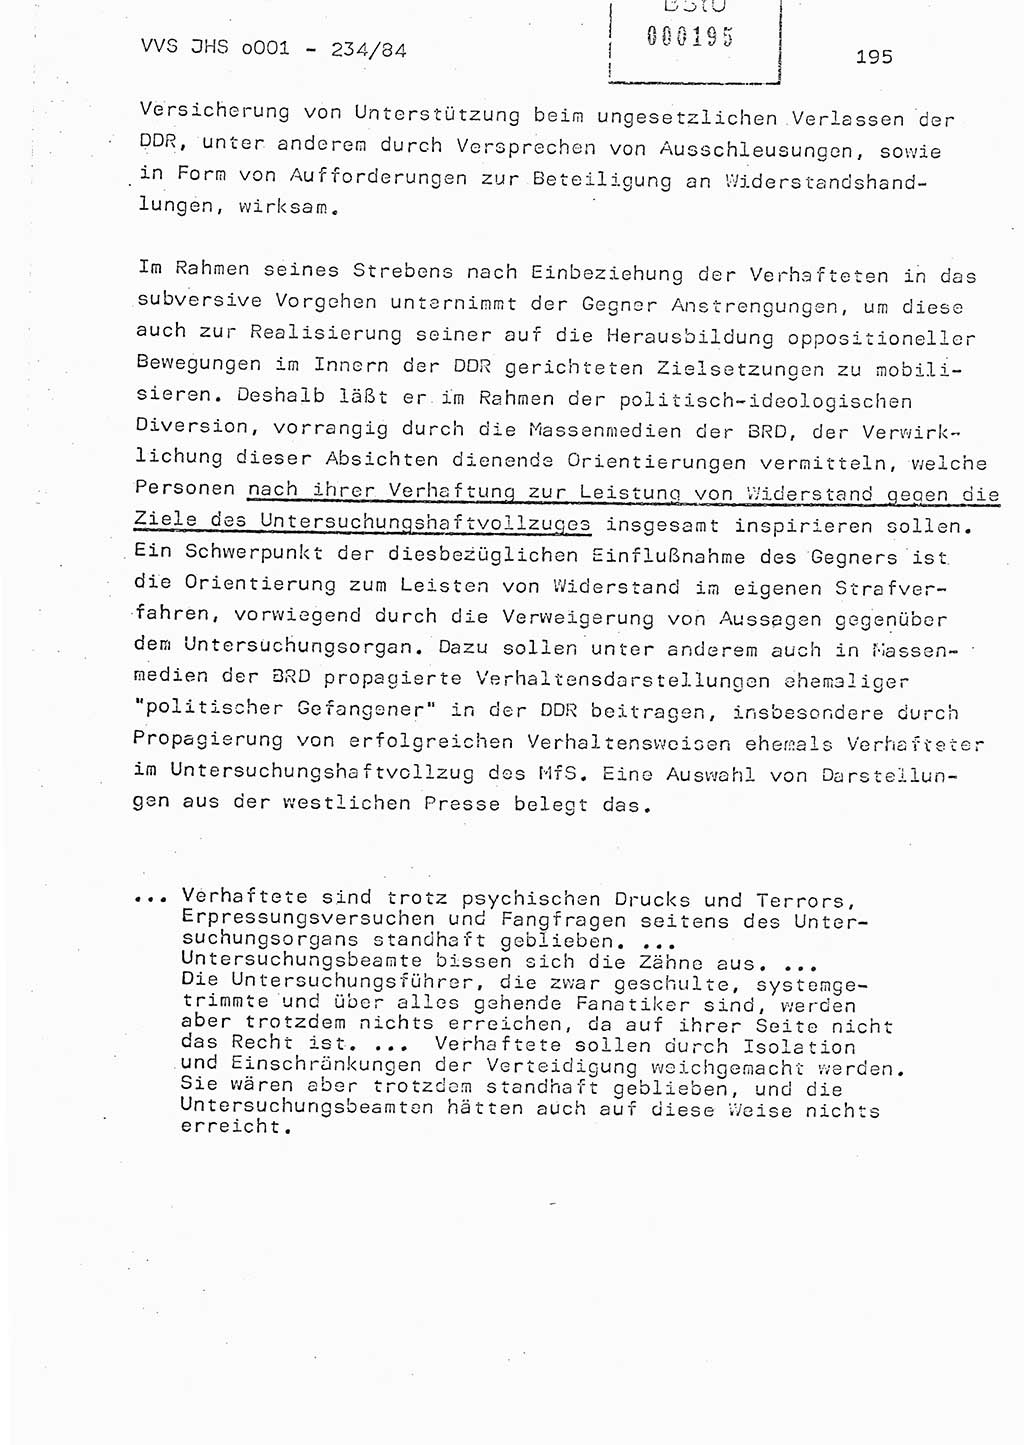 Dissertation Oberst Siegfried Rataizick (Abt. ⅩⅣ), Oberstleutnant Volkmar Heinz (Abt. ⅩⅣ), Oberstleutnant Werner Stein (HA Ⅸ), Hauptmann Heinz Conrad (JHS), Ministerium für Staatssicherheit (MfS) [Deutsche Demokratische Republik (DDR)], Juristische Hochschule (JHS), Vertrauliche Verschlußsache (VVS) o001-234/84, Potsdam 1984, Seite 195 (Diss. MfS DDR JHS VVS o001-234/84 1984, S. 195)